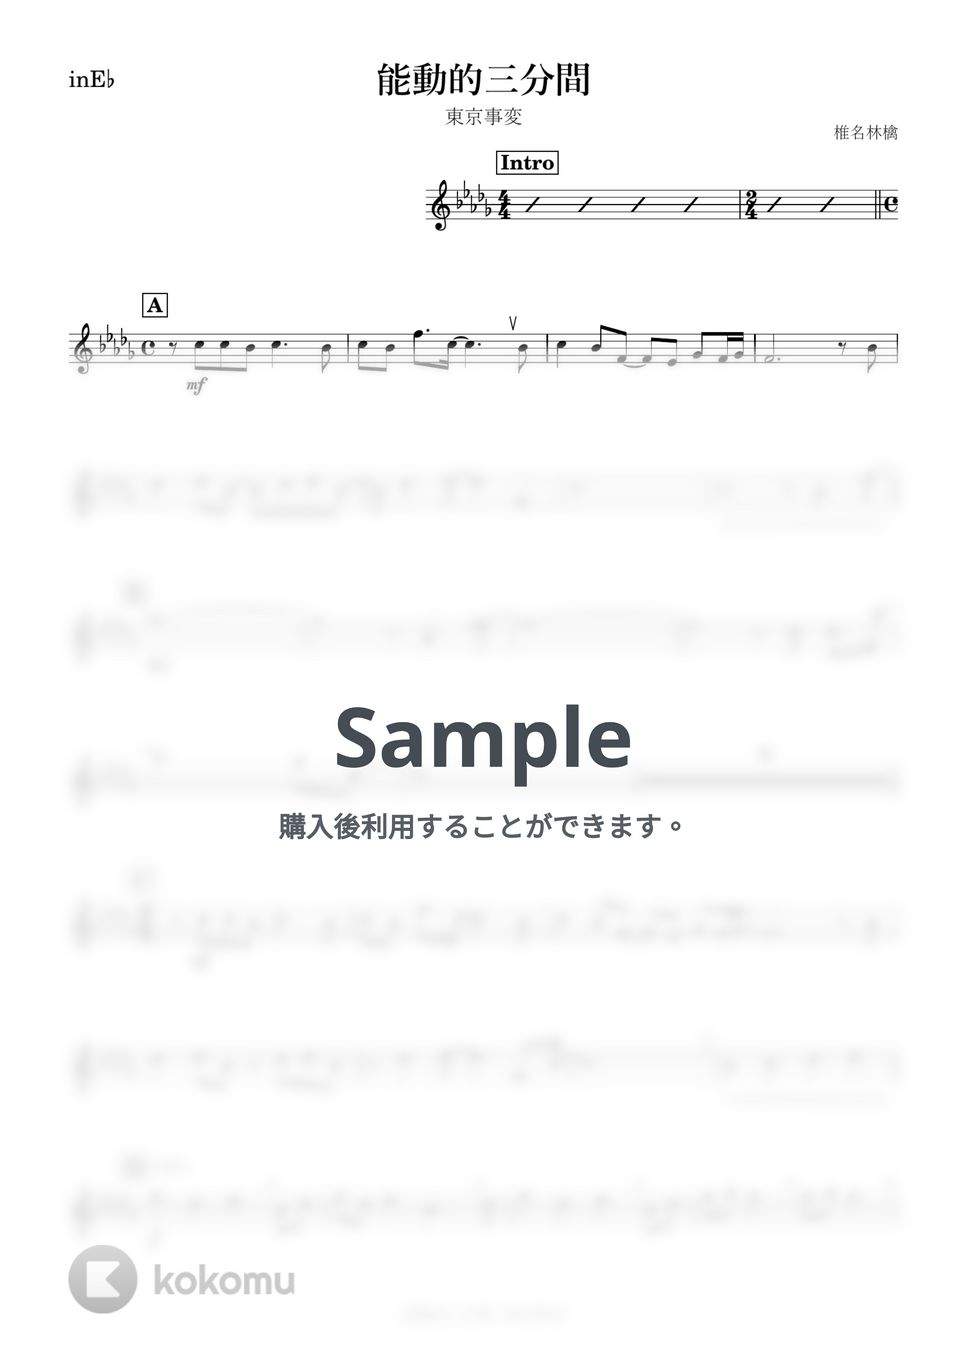 東京事変 - 能動的三分間 (E♭) by kanamusic